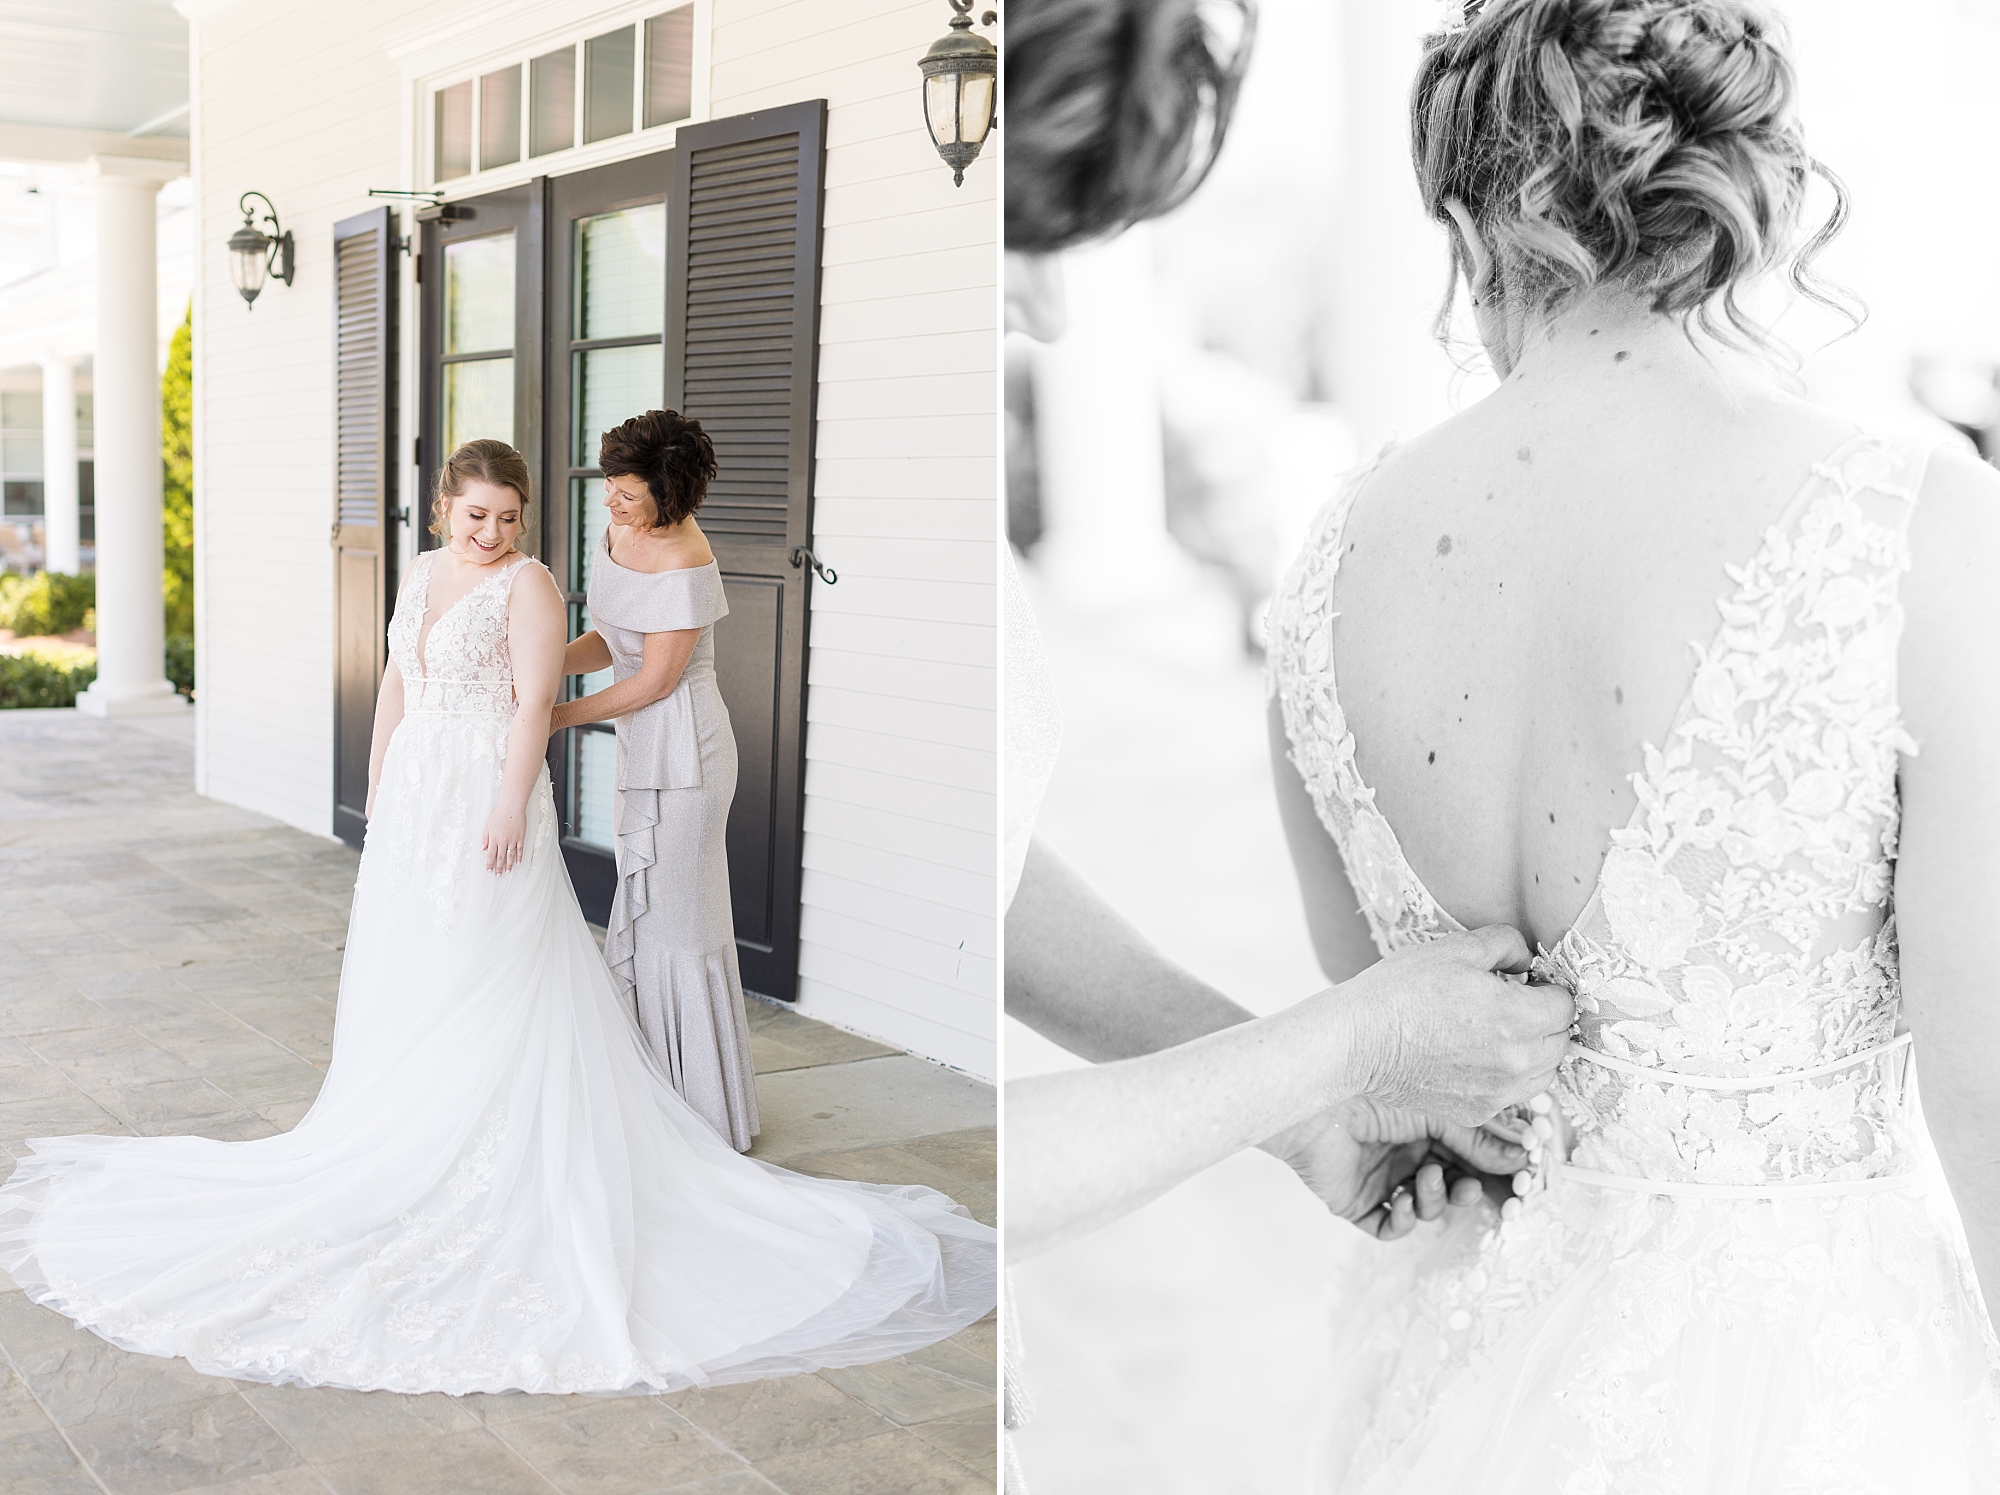 Mother zipping up daughters wedding dress - Raleigh NC Wedding Photographer - Sarah Hinckley Photography